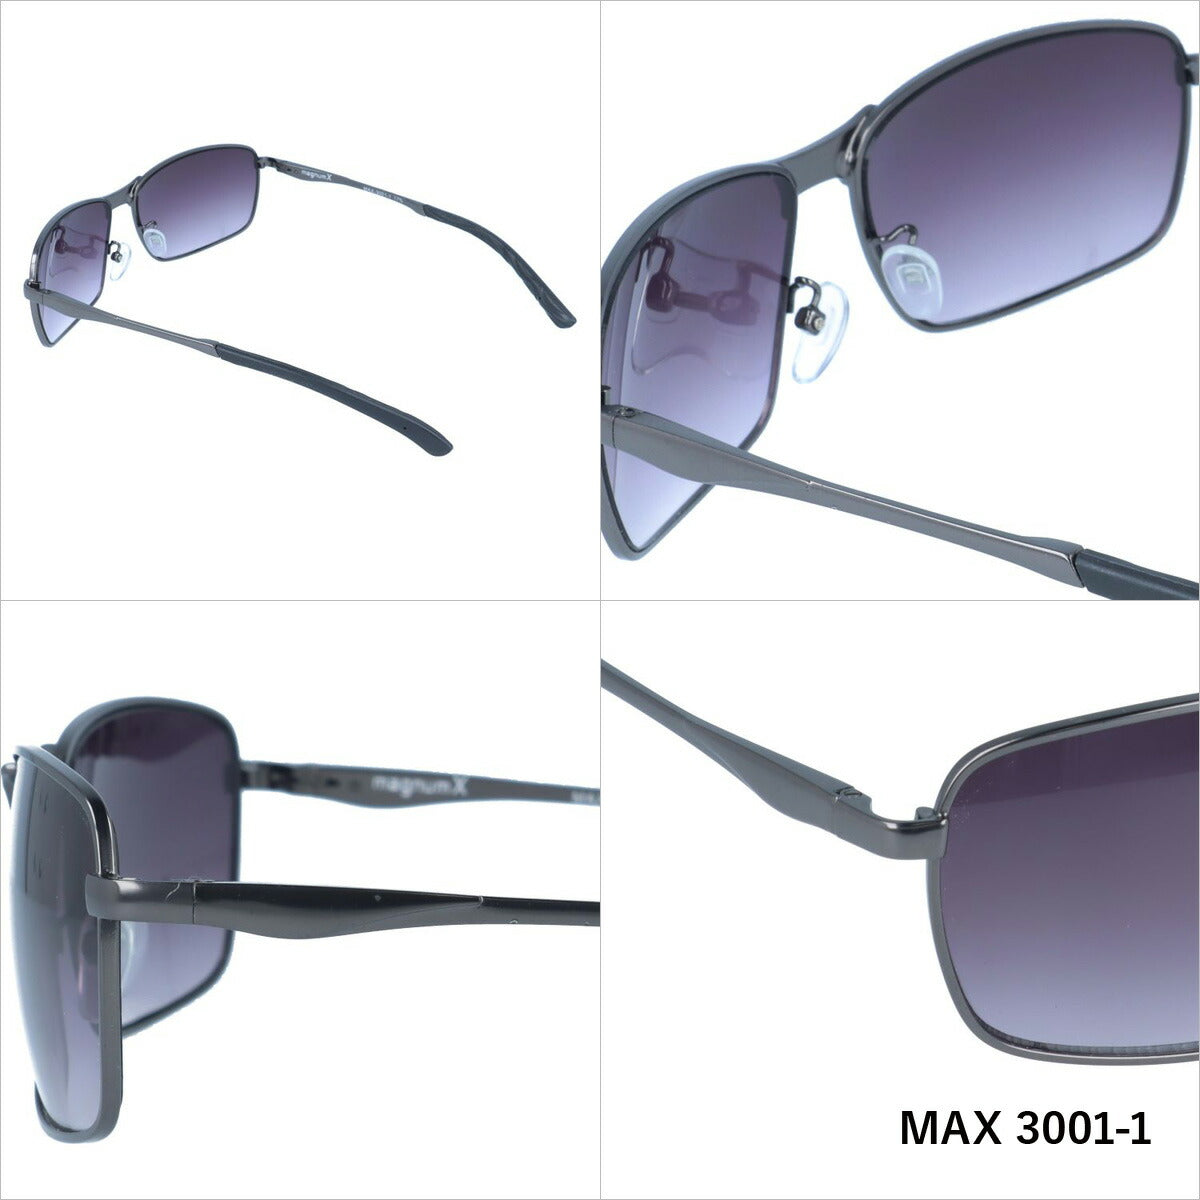 マグナムエックス サングラス magnumX MAX 3001 全3カラー 60サイズ スクエア メンズ レディース 紫外線対策 UVカット おしゃれ プレゼント ギフト